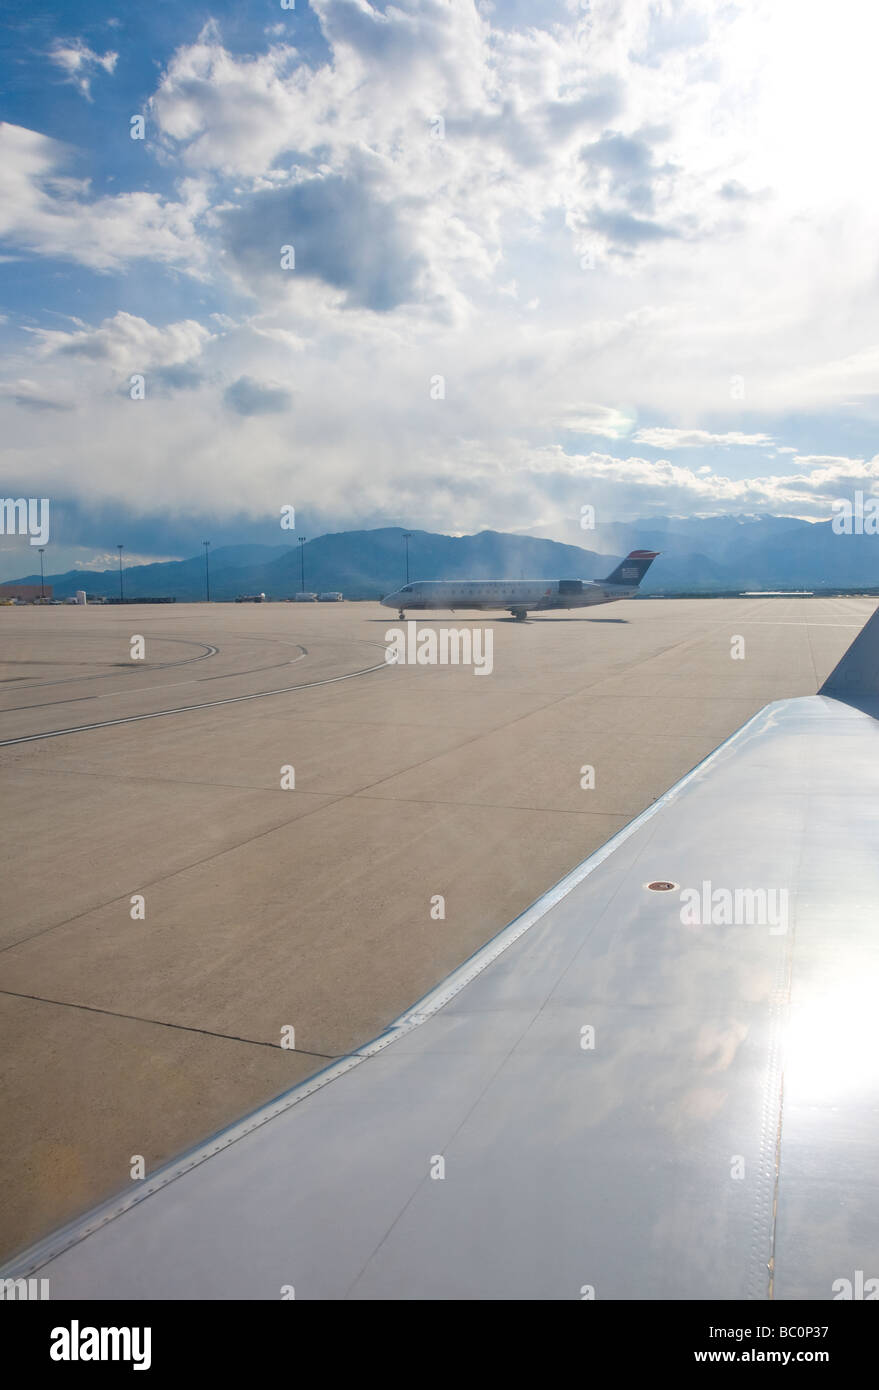 Flugzeugflügel auf Asphalt am Flughafen, USA Stockfoto